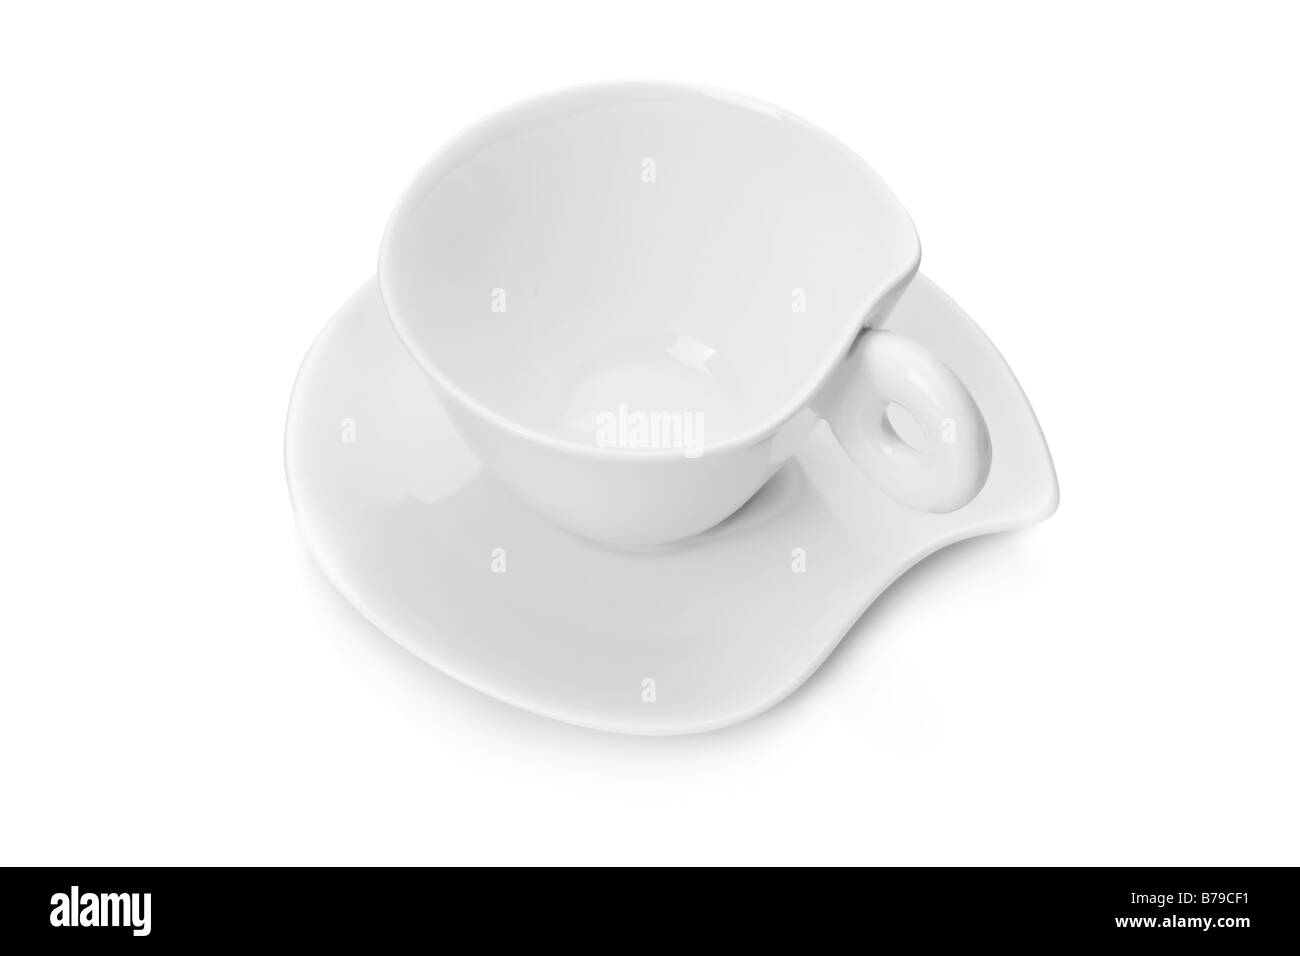 White tazza da caffè con piattino isolati su sfondo bianco Foto Stock